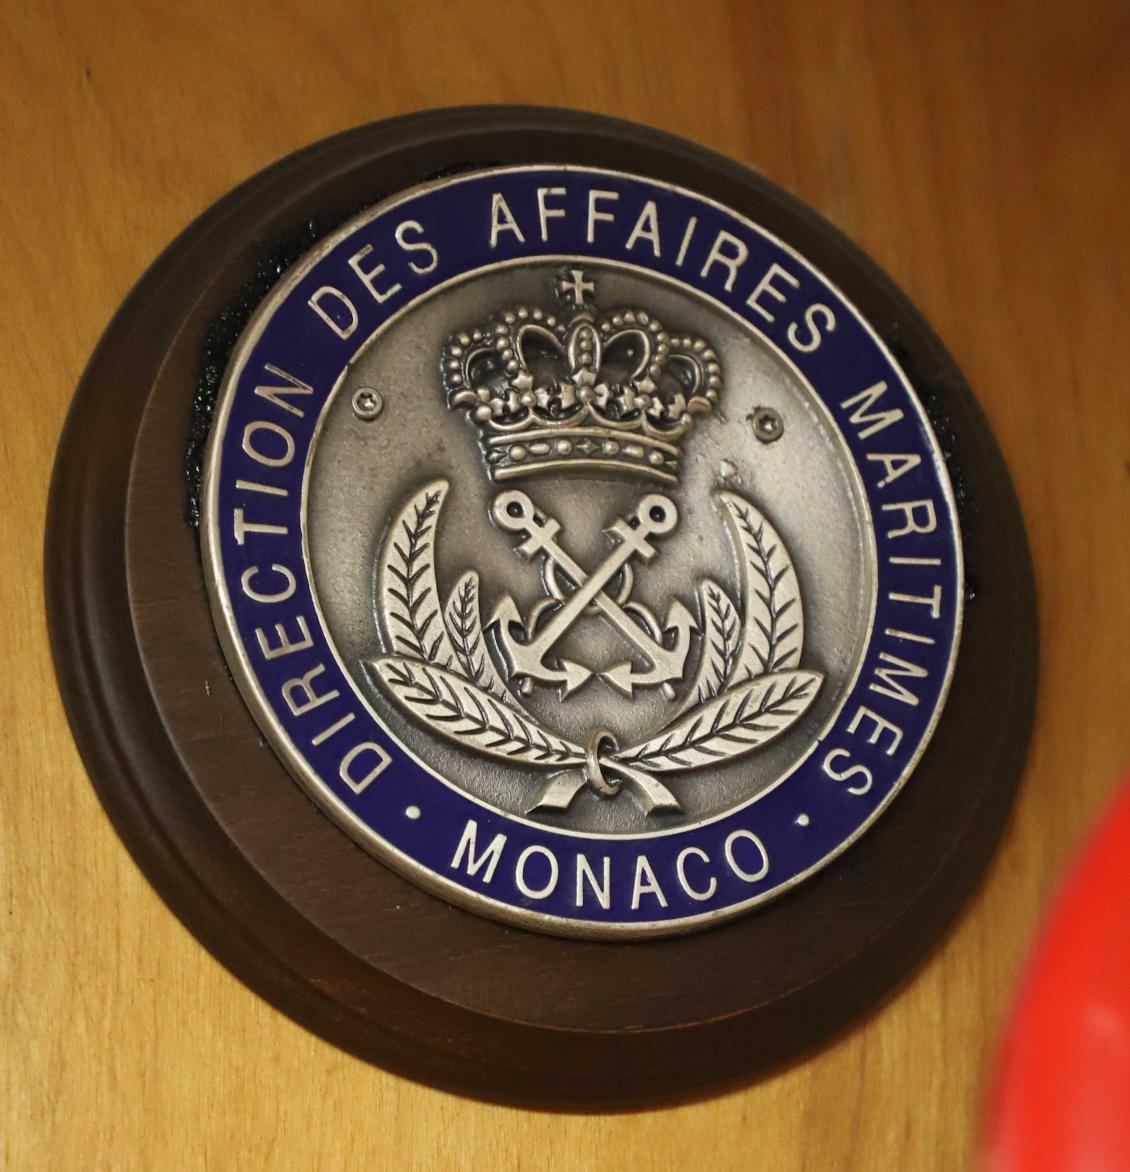 Coast Guard Cutter Eagle - Direction Des Affaires Maritimes - Monaco